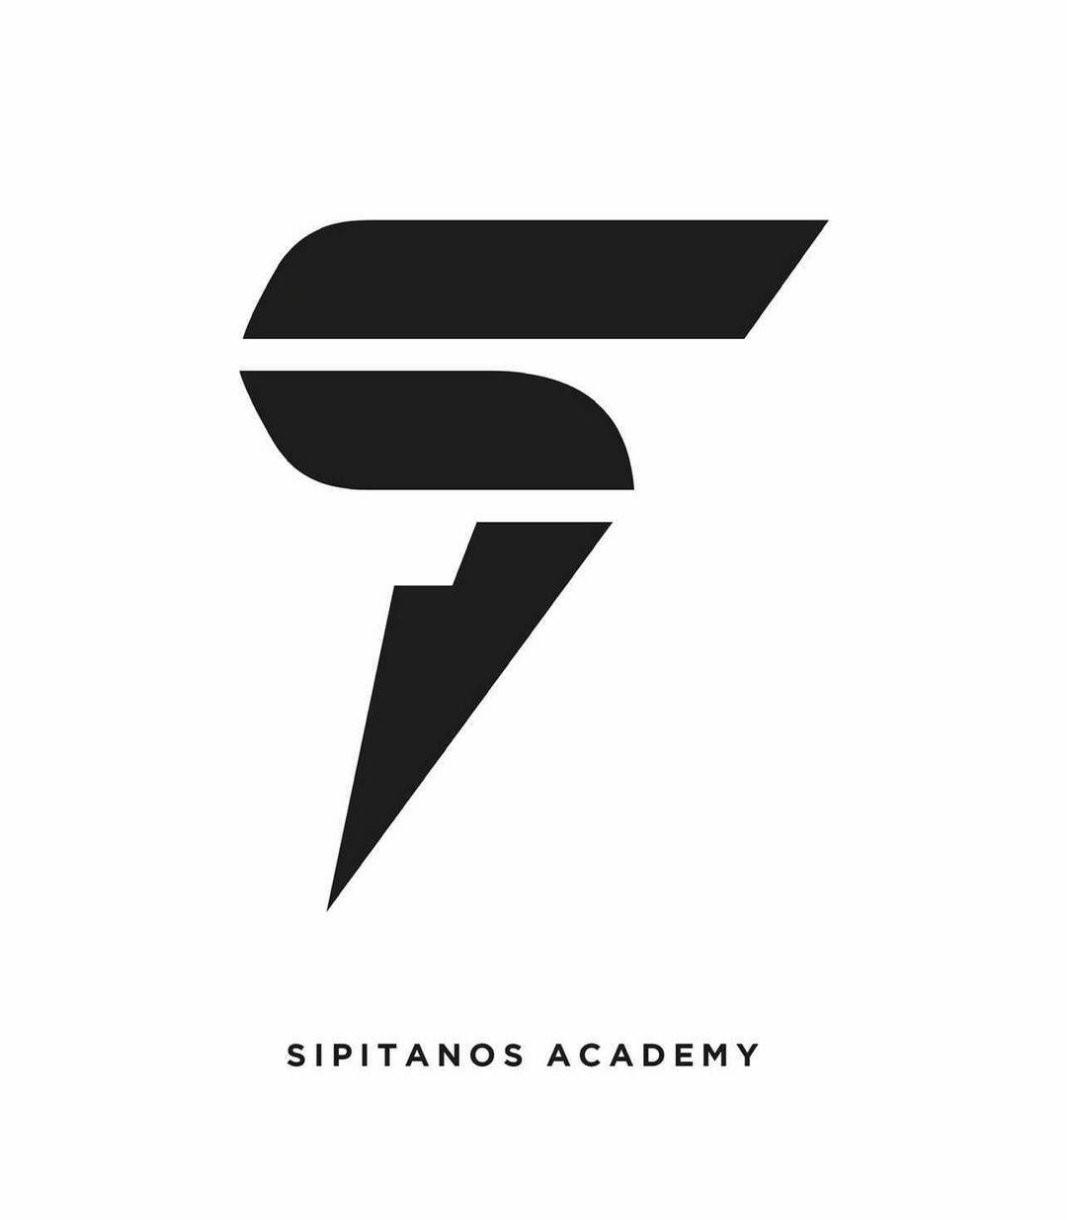 SIPITANOS TENNIS ACADEMY logo